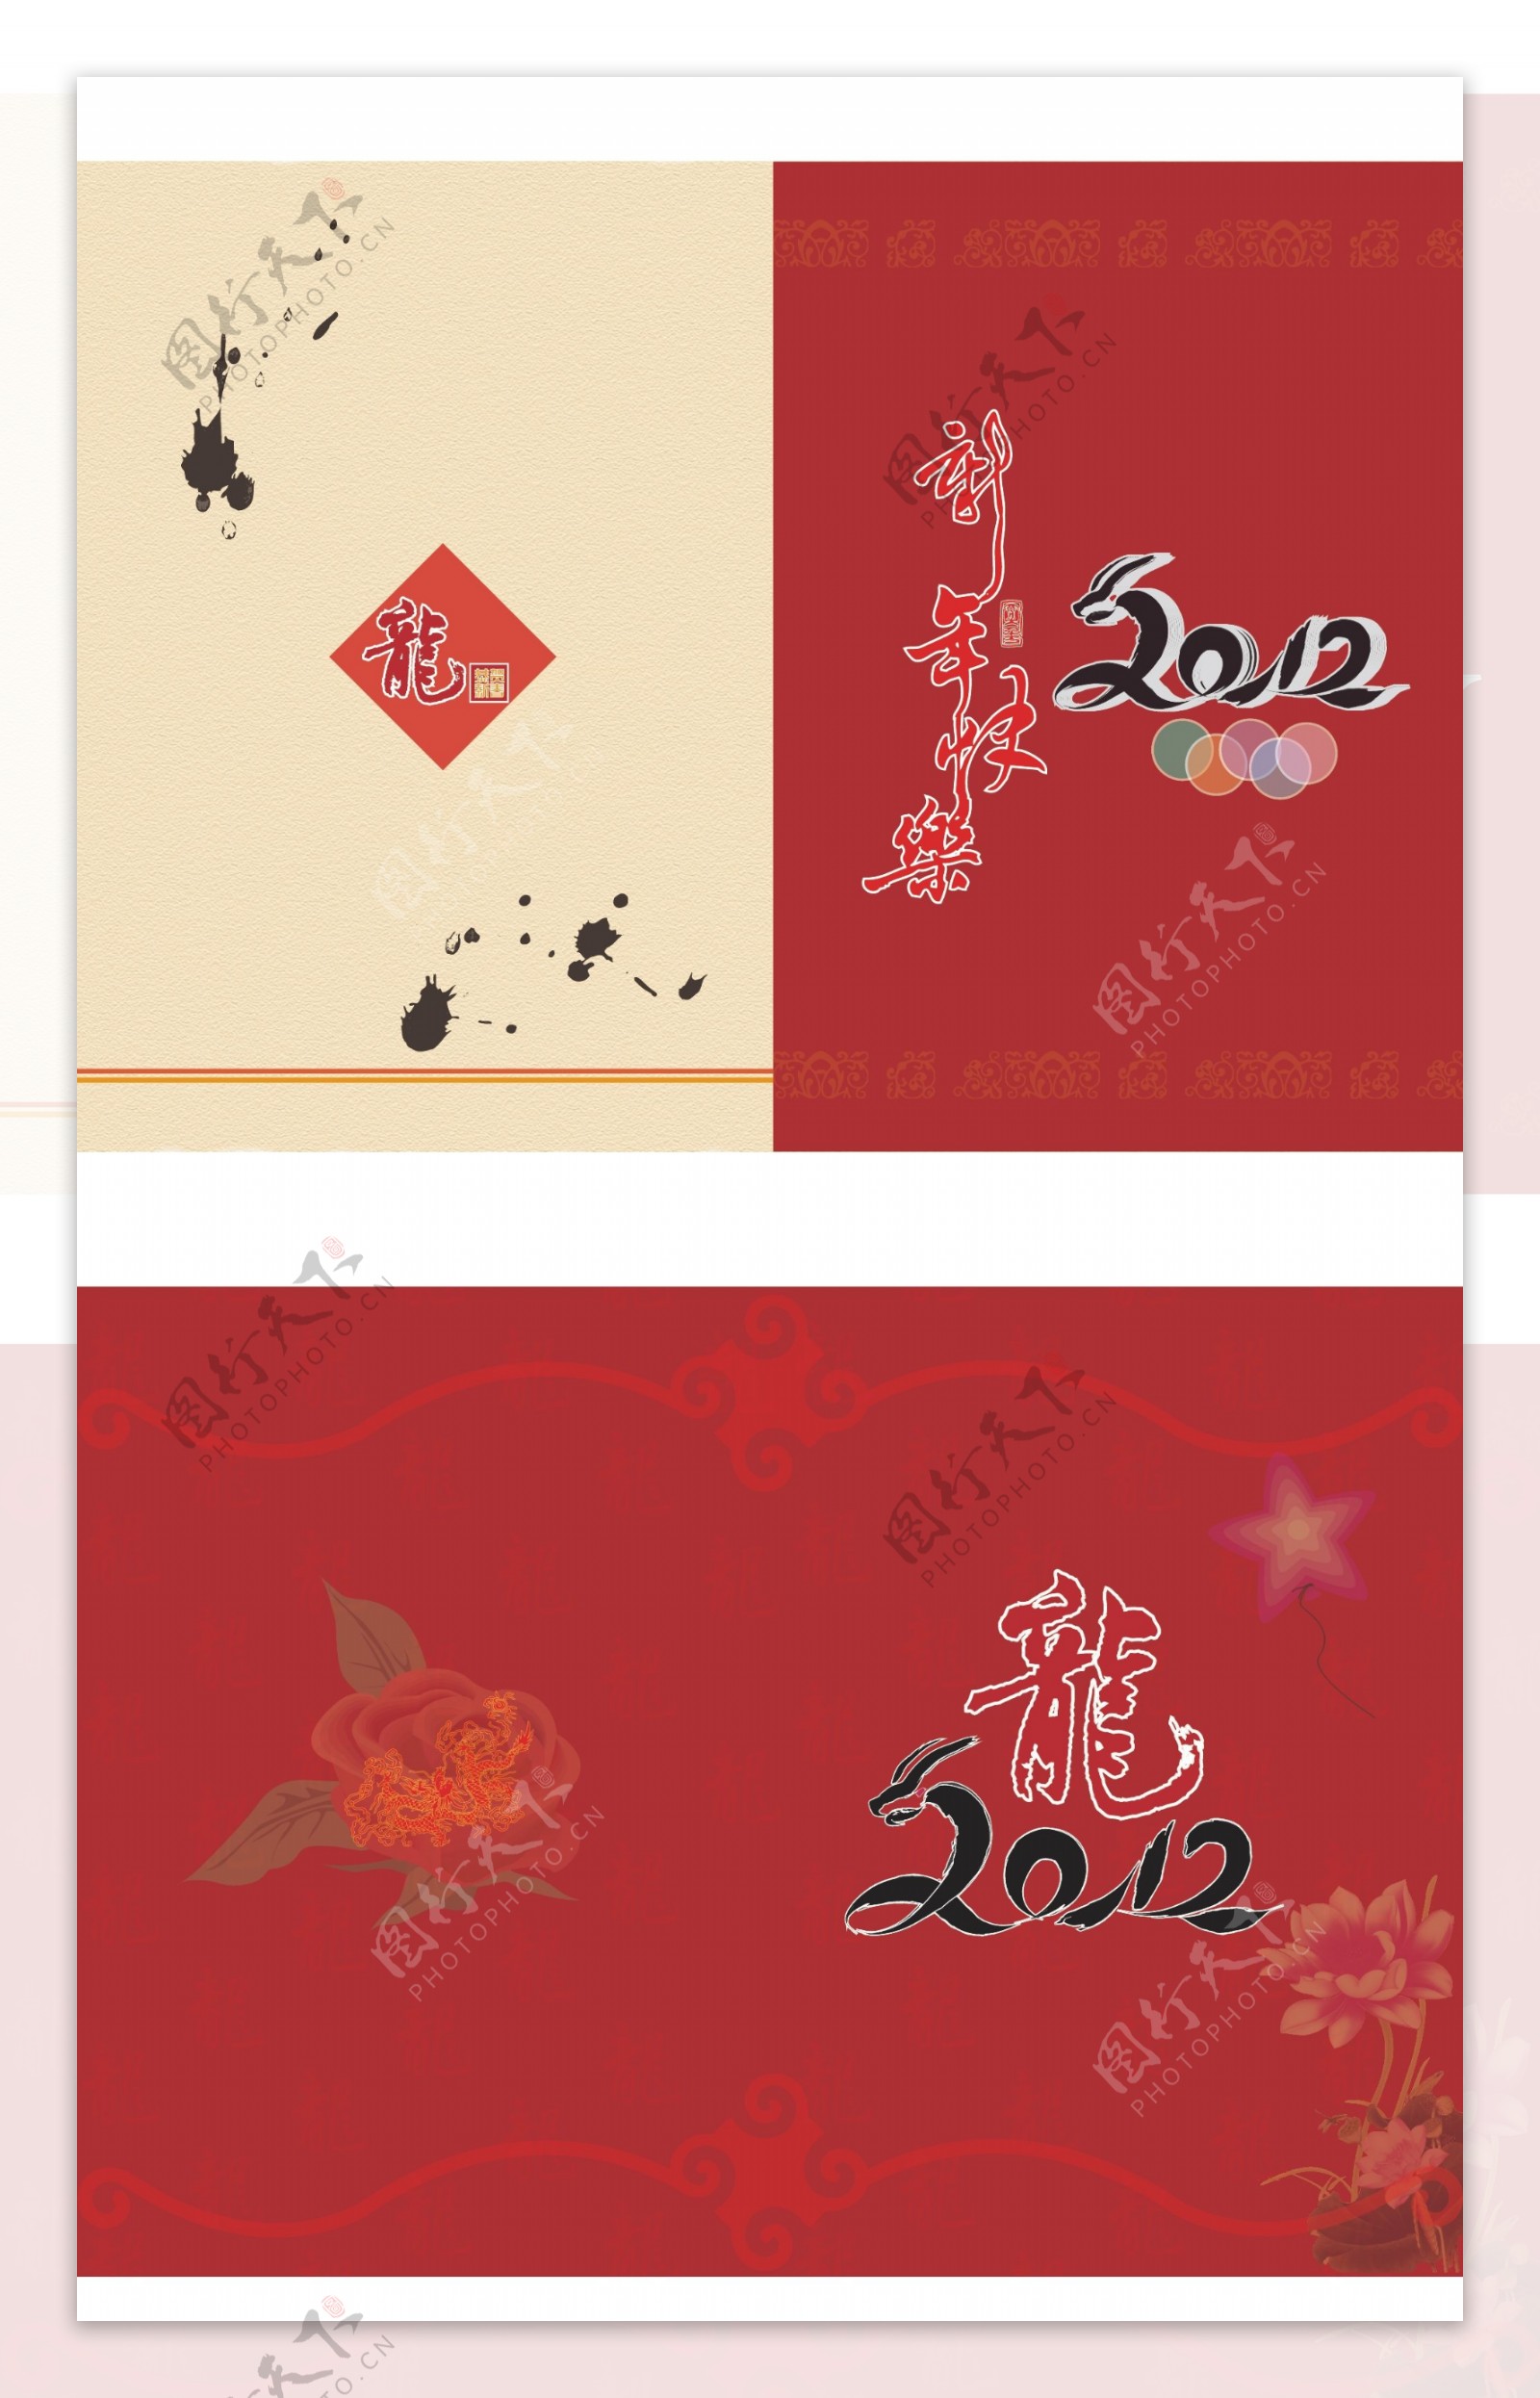 2012年贺卡两种版式图片